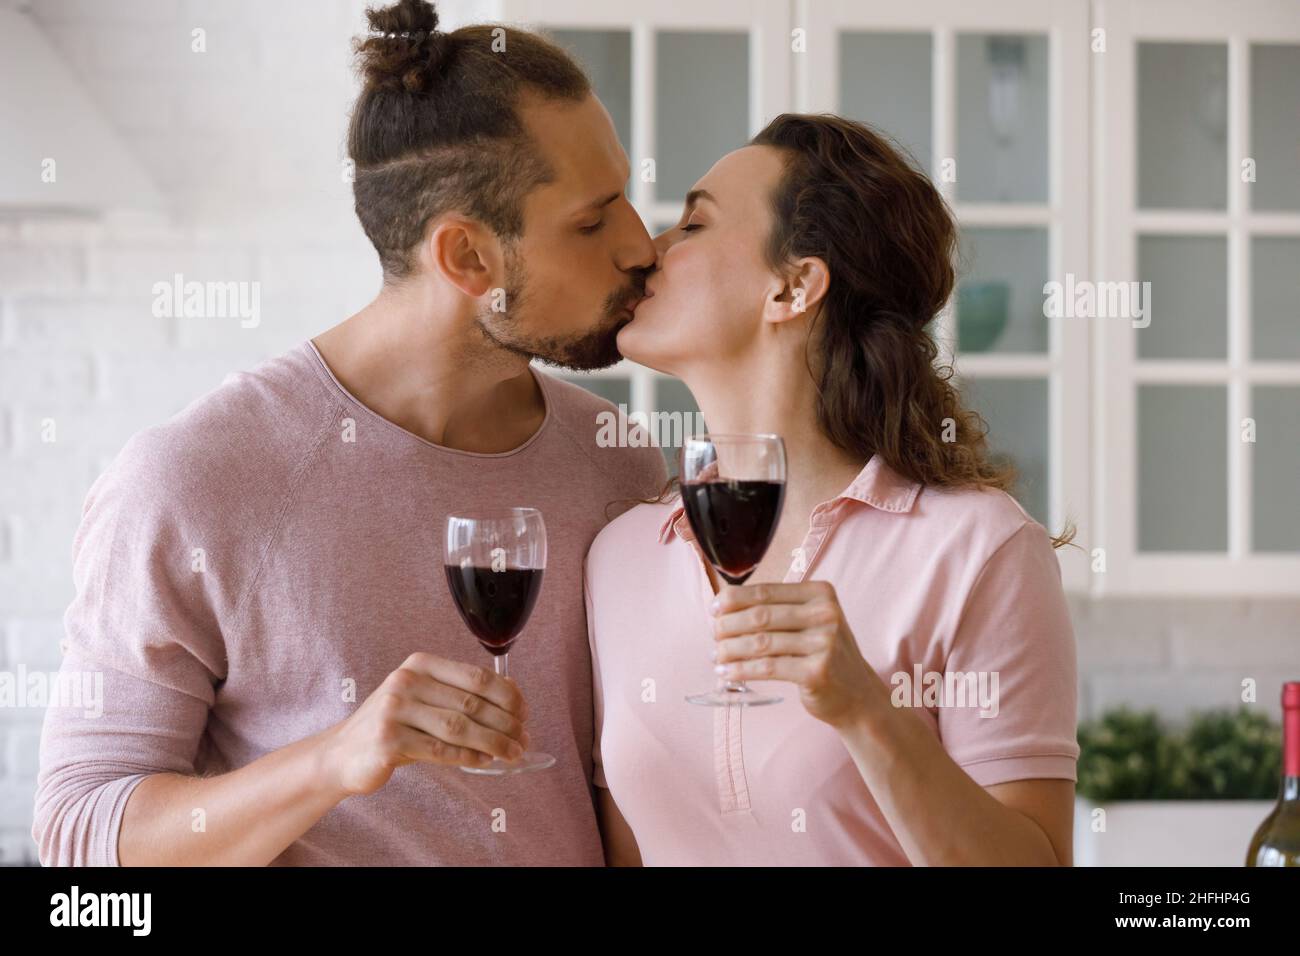 Affectueux amour jeune couple de famille embrassant, clinking lunettes. Banque D'Images